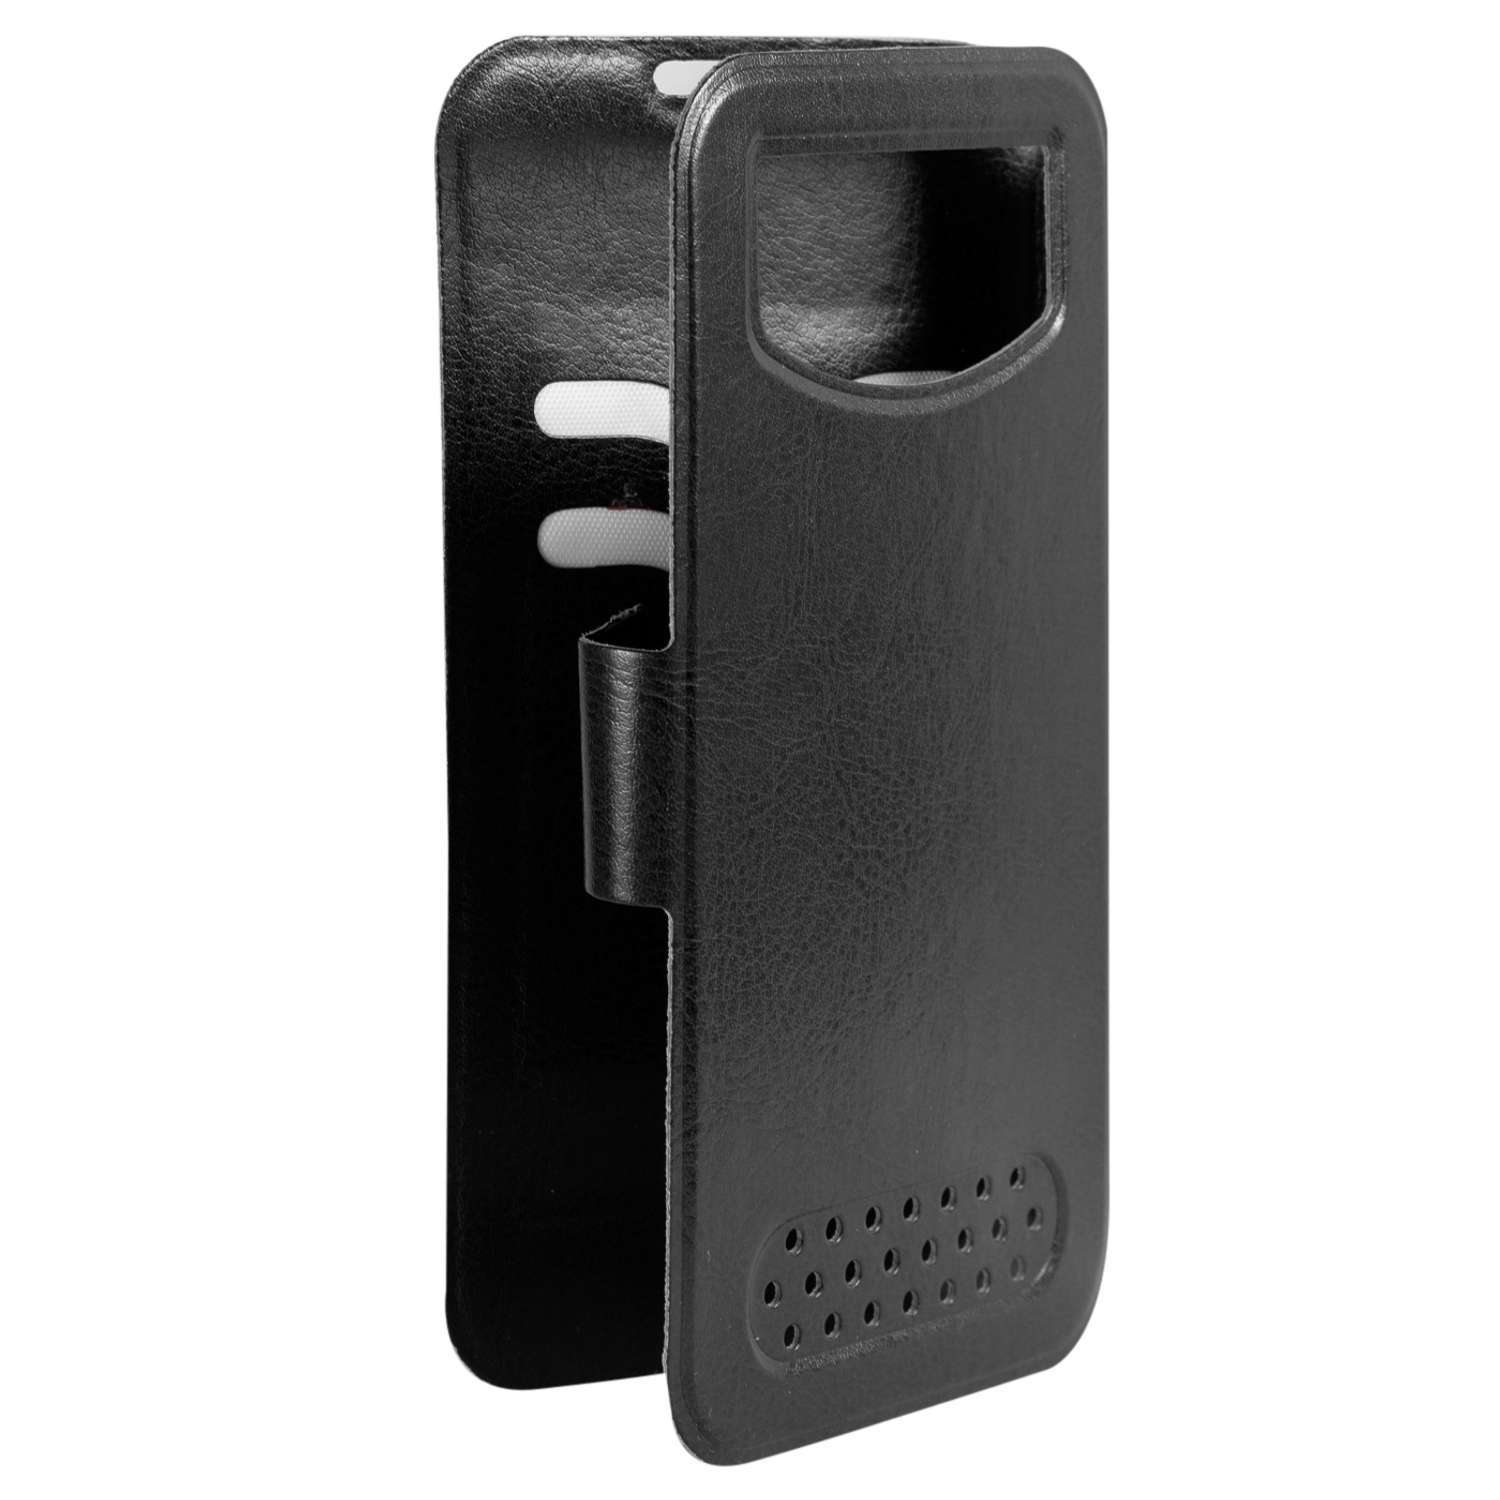 Чехол универсальный iBox Universal для телефонов 4.2-5 дюйма черный - фото 3